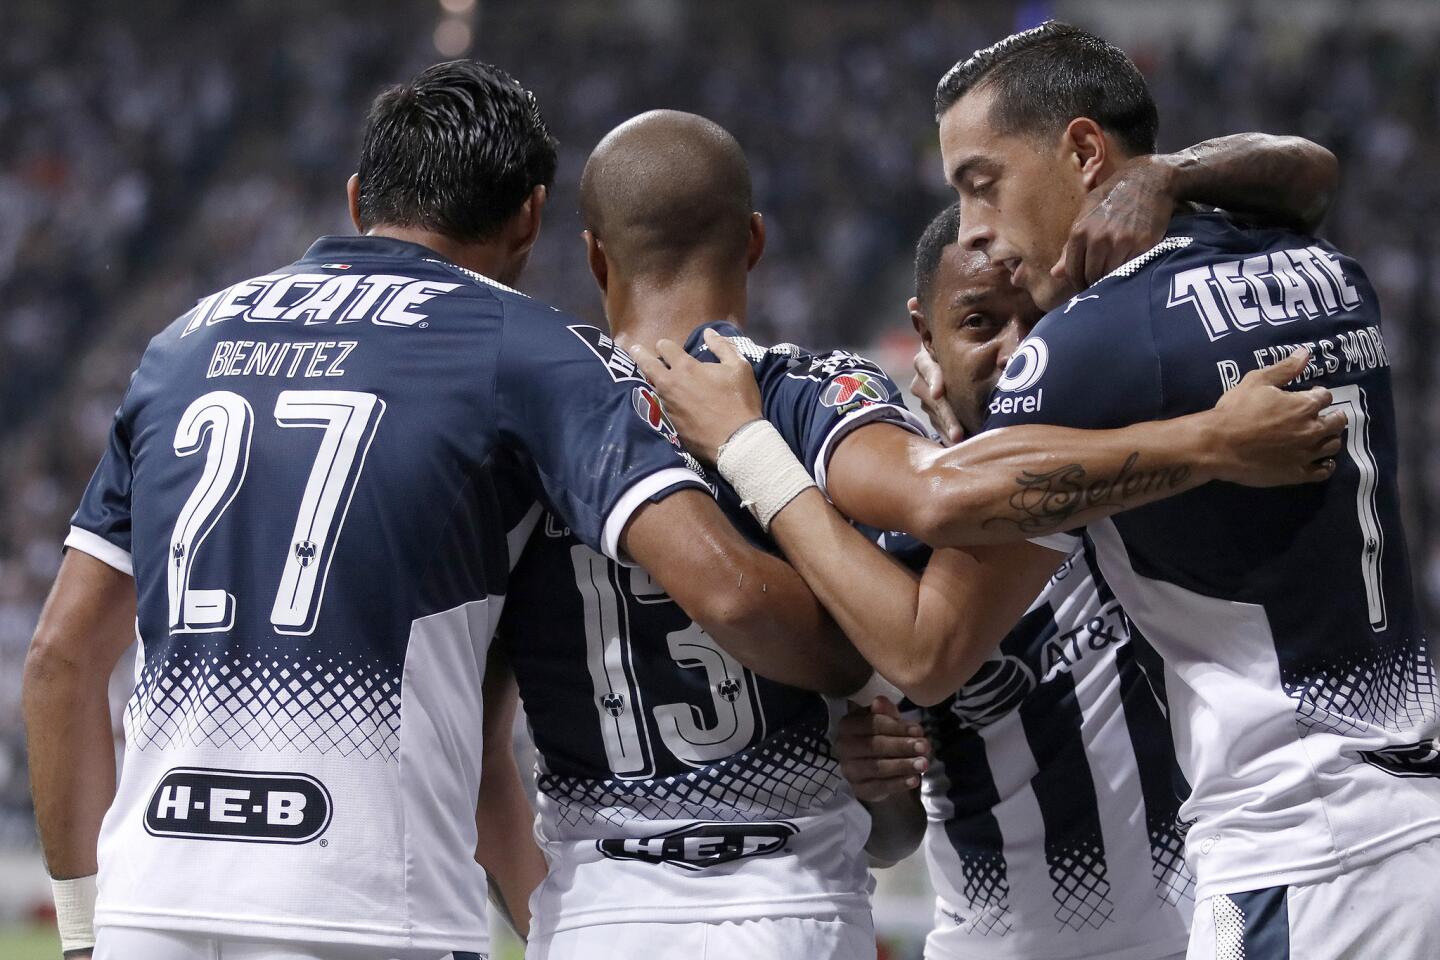 Jugadores de Monterrey festejan una anotación ante Monarcas este domingo 3 de diciembre en el partido de vuelta de la semifinal del Torneo Apertura 2017 celebrado en el estadio BBVA de la ciudad de Monterrey.